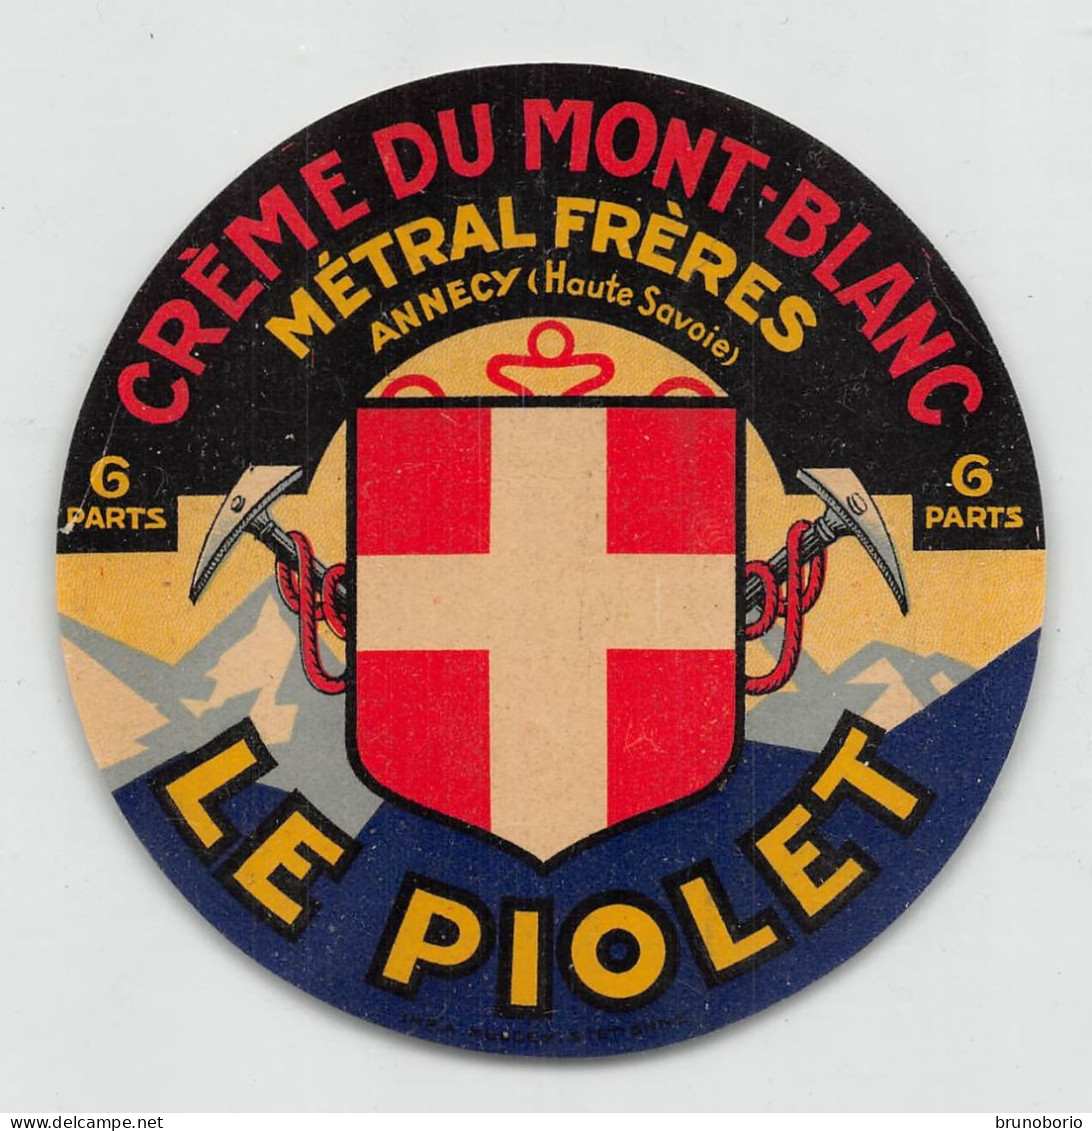 00116 "CREME DU MONT-BLANC - METRAL FRERES - LE PIOLET - 6 PARTS"  ETICH. ORIG STEMMA, PICOZZE - Fromage